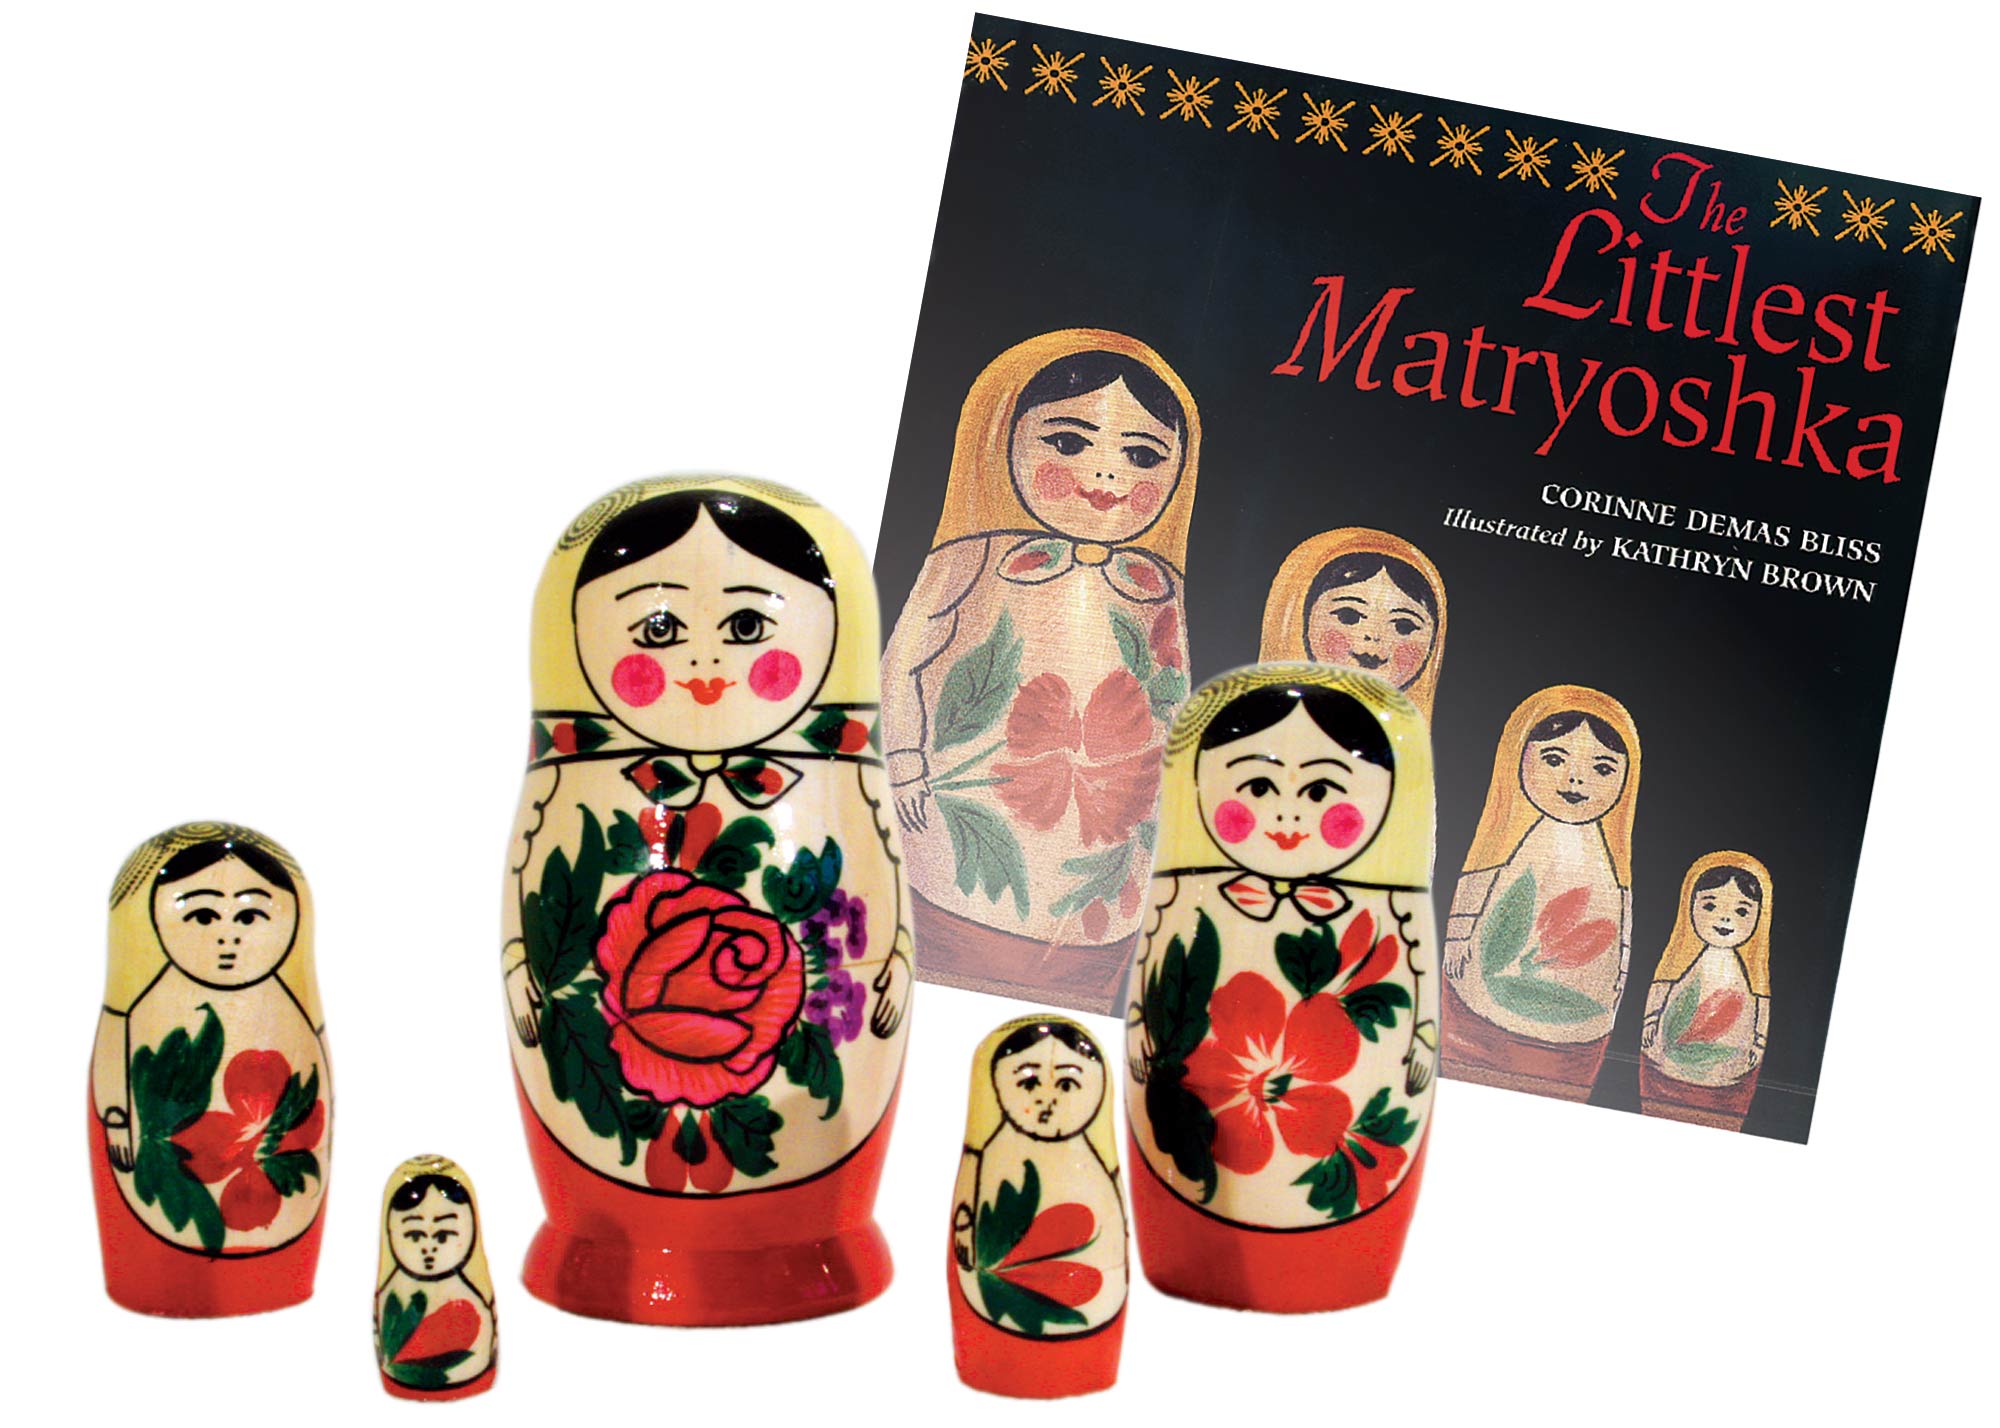 Buy The Littlest Matryoshka Book & Doll Set at GoldenCockerel.com